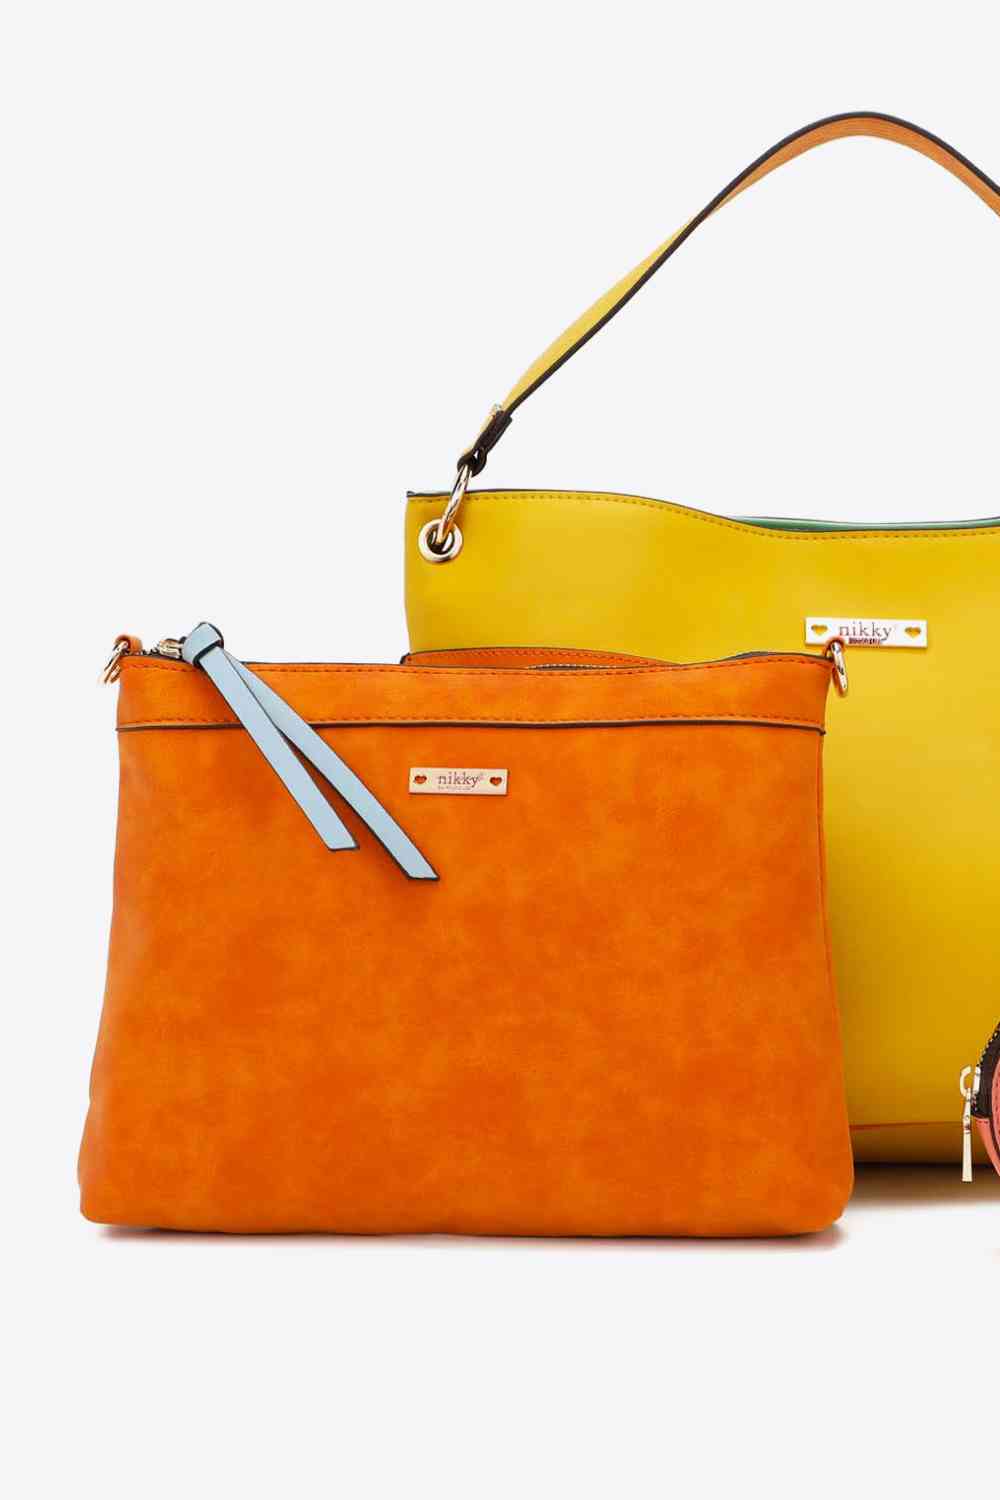 Nicole Lee USA Sweetheart Handbag Set Orange No 2